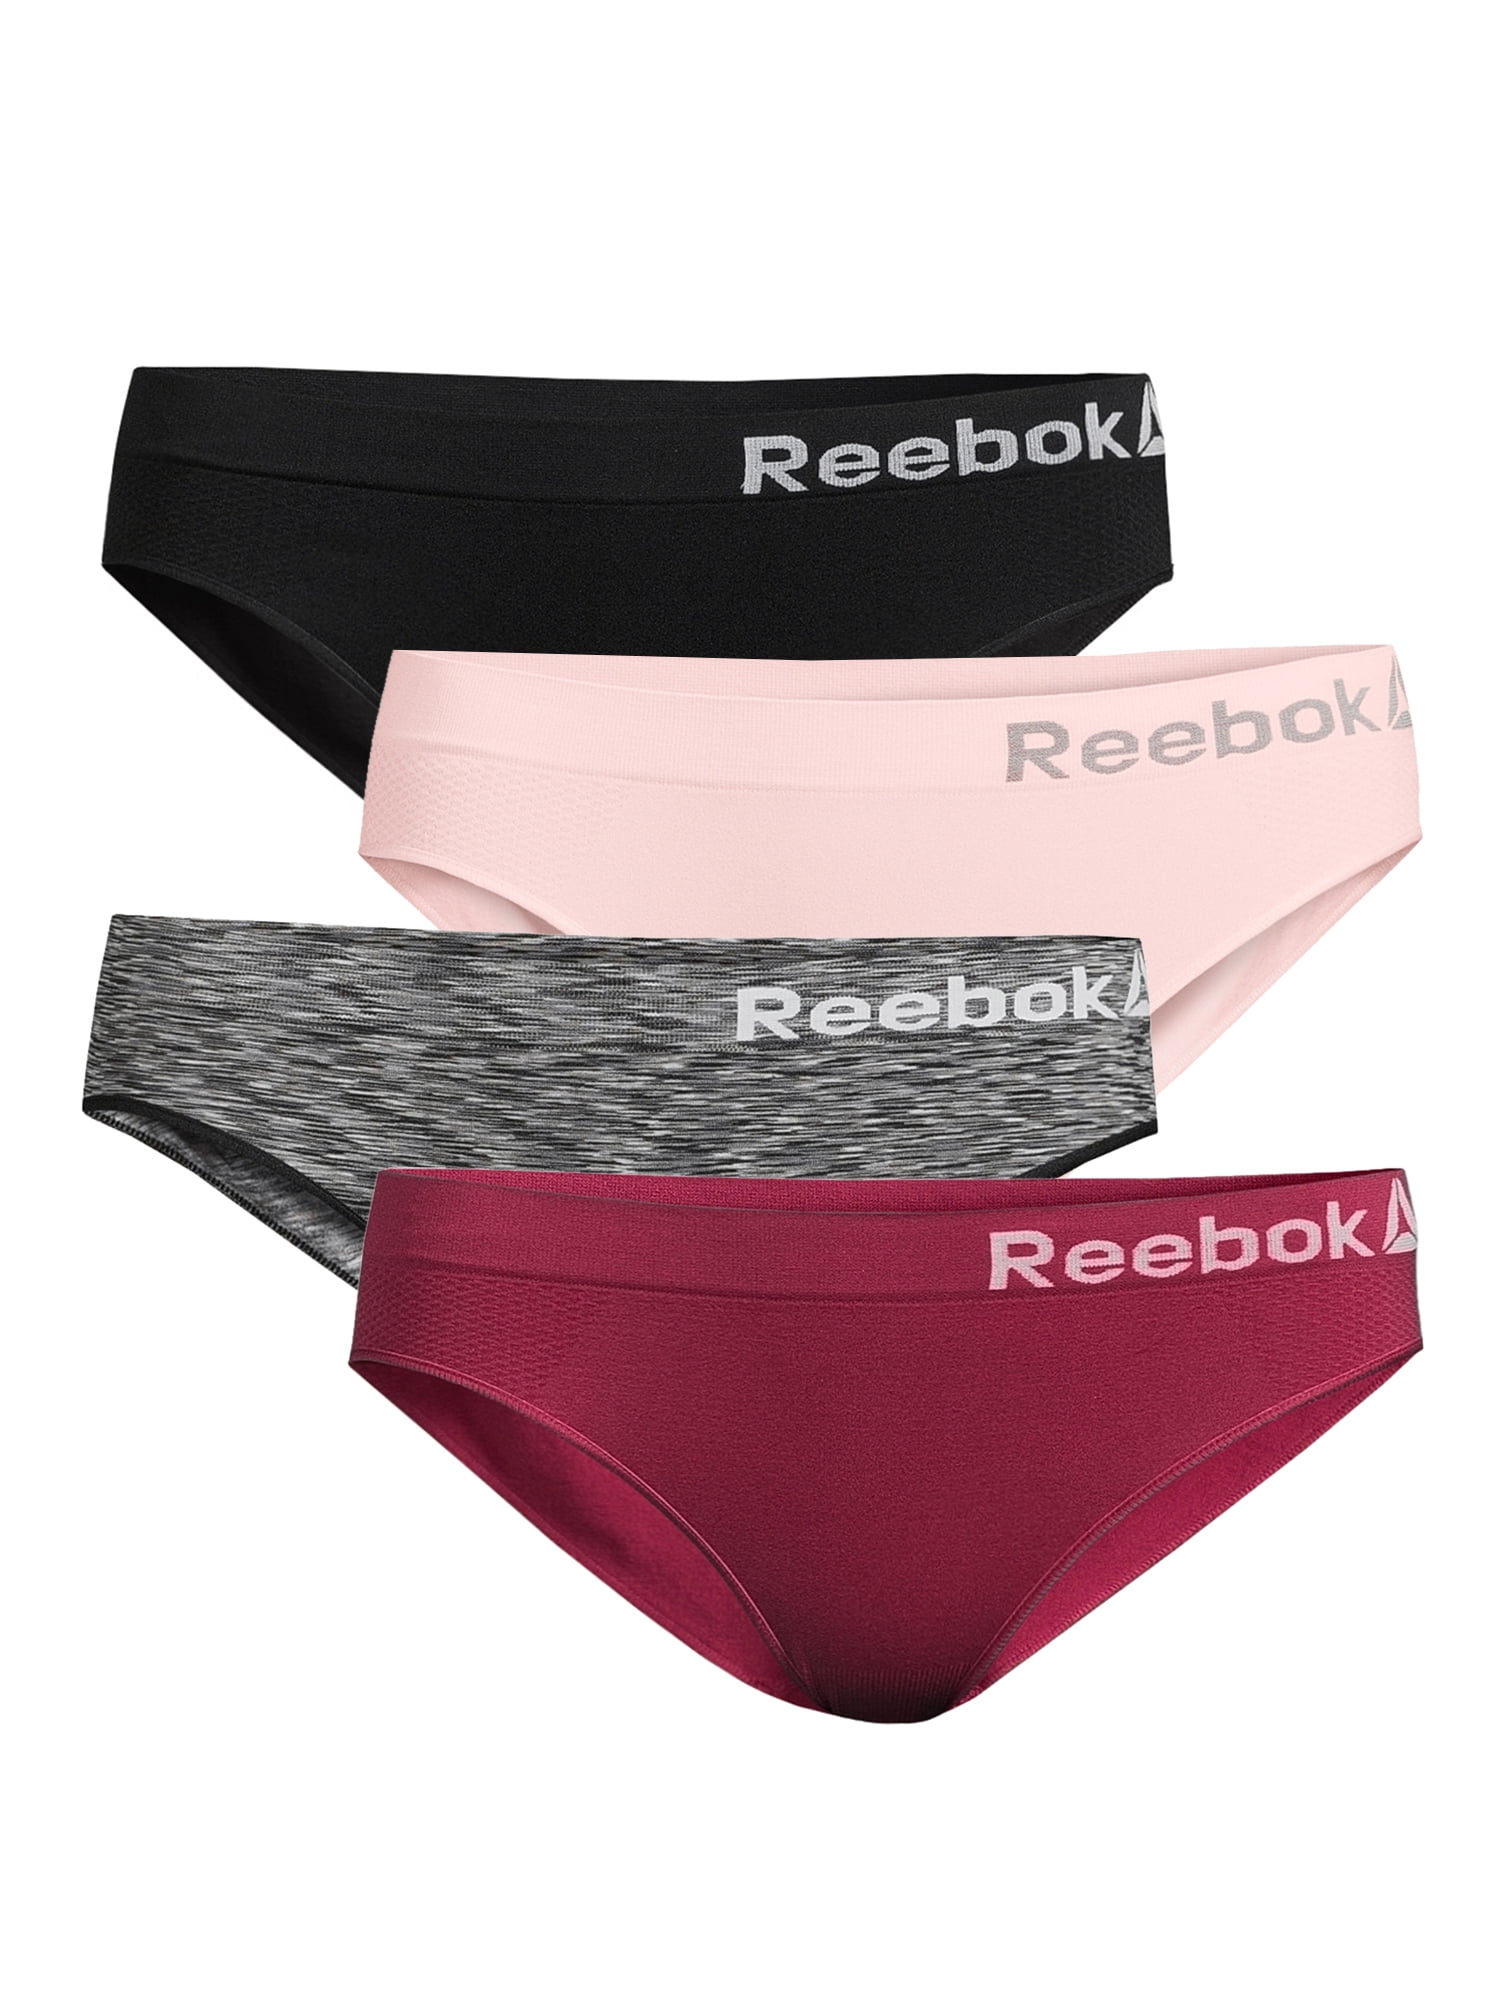 Reebok Underwear & Lingerie - Women - Philippines price